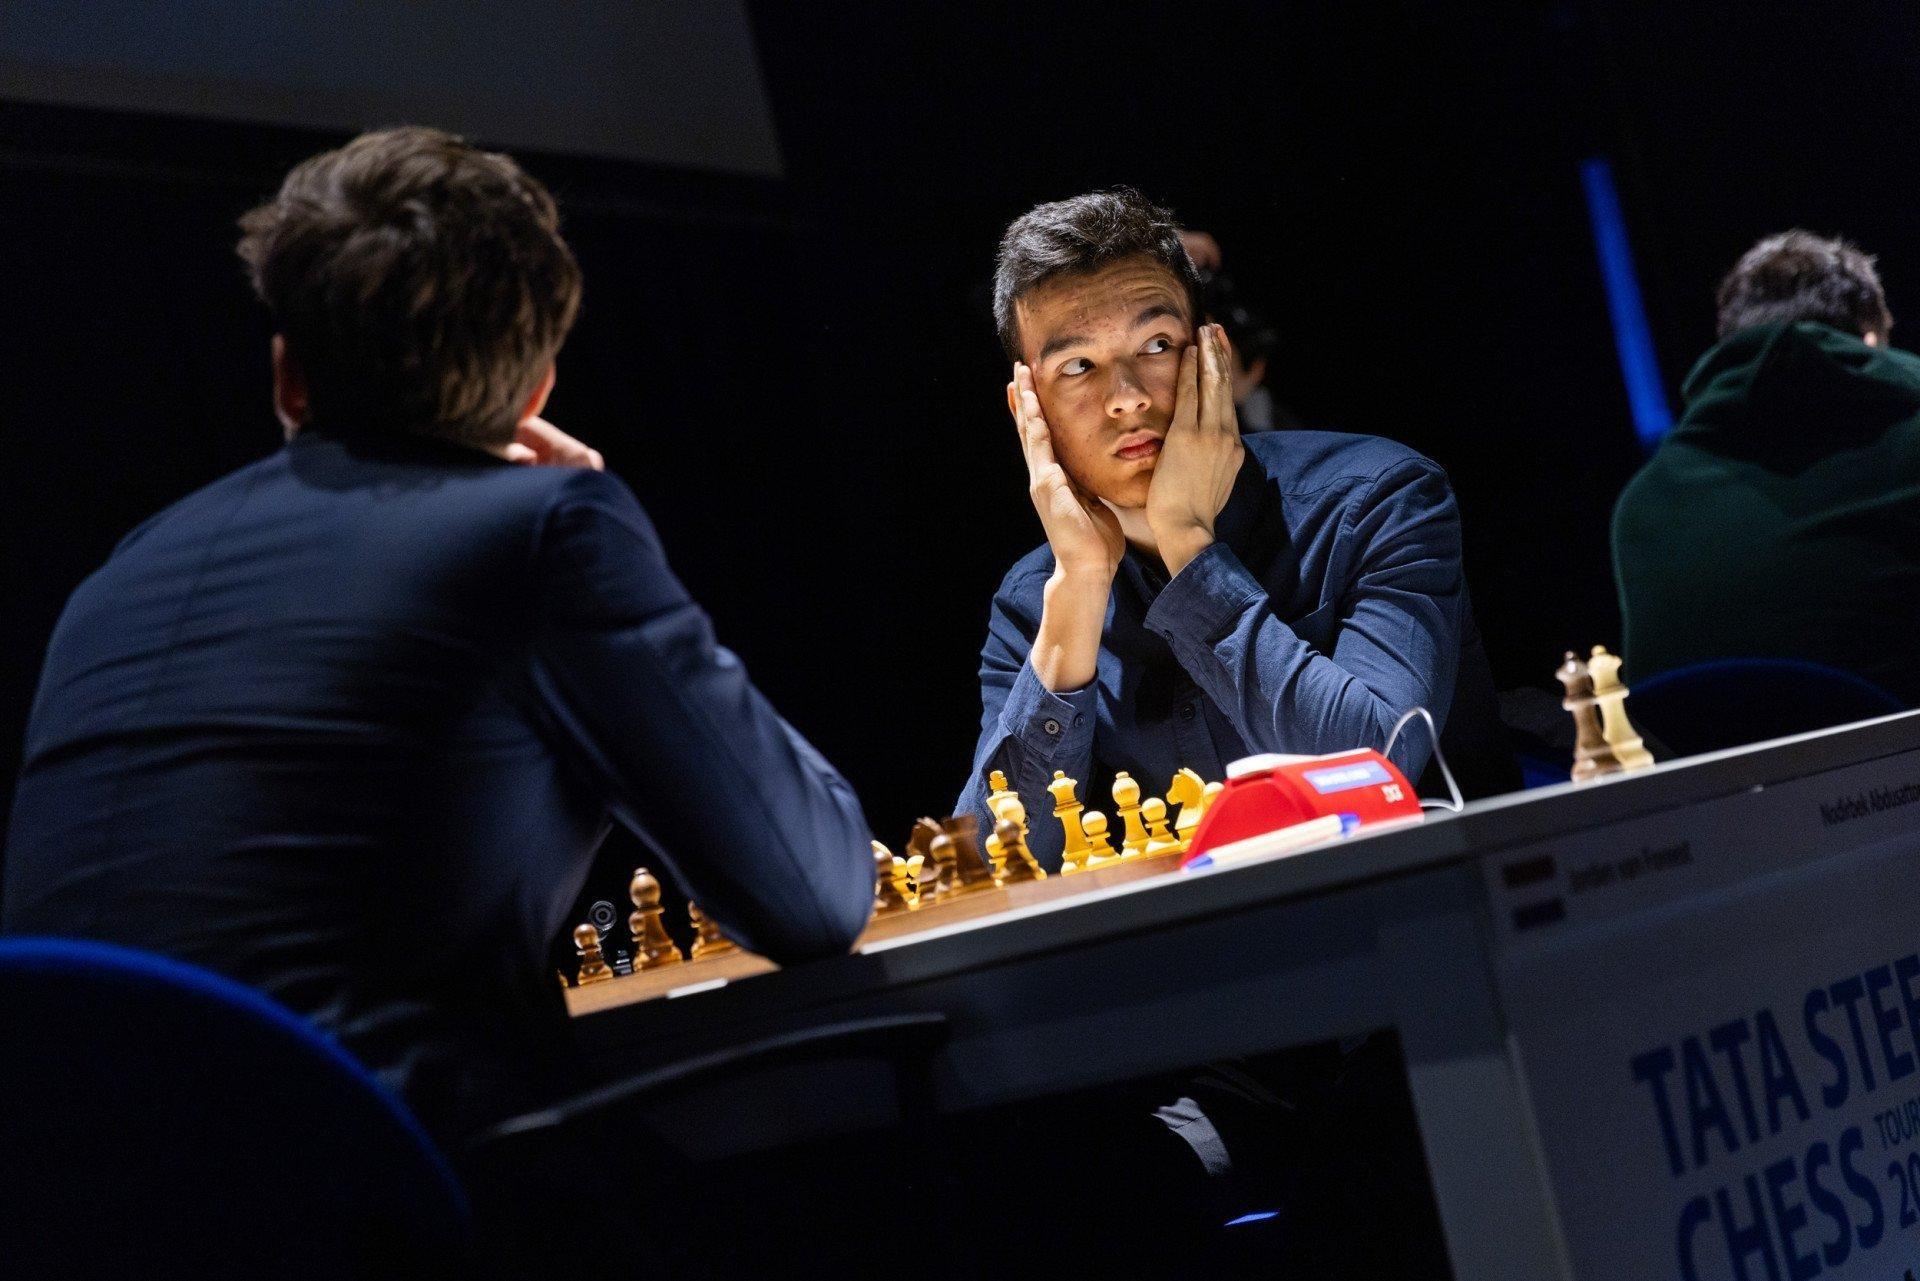 Нодирбек Абдусаттаров одержал победу над нидерландским шахматистом в шестичасовом матче